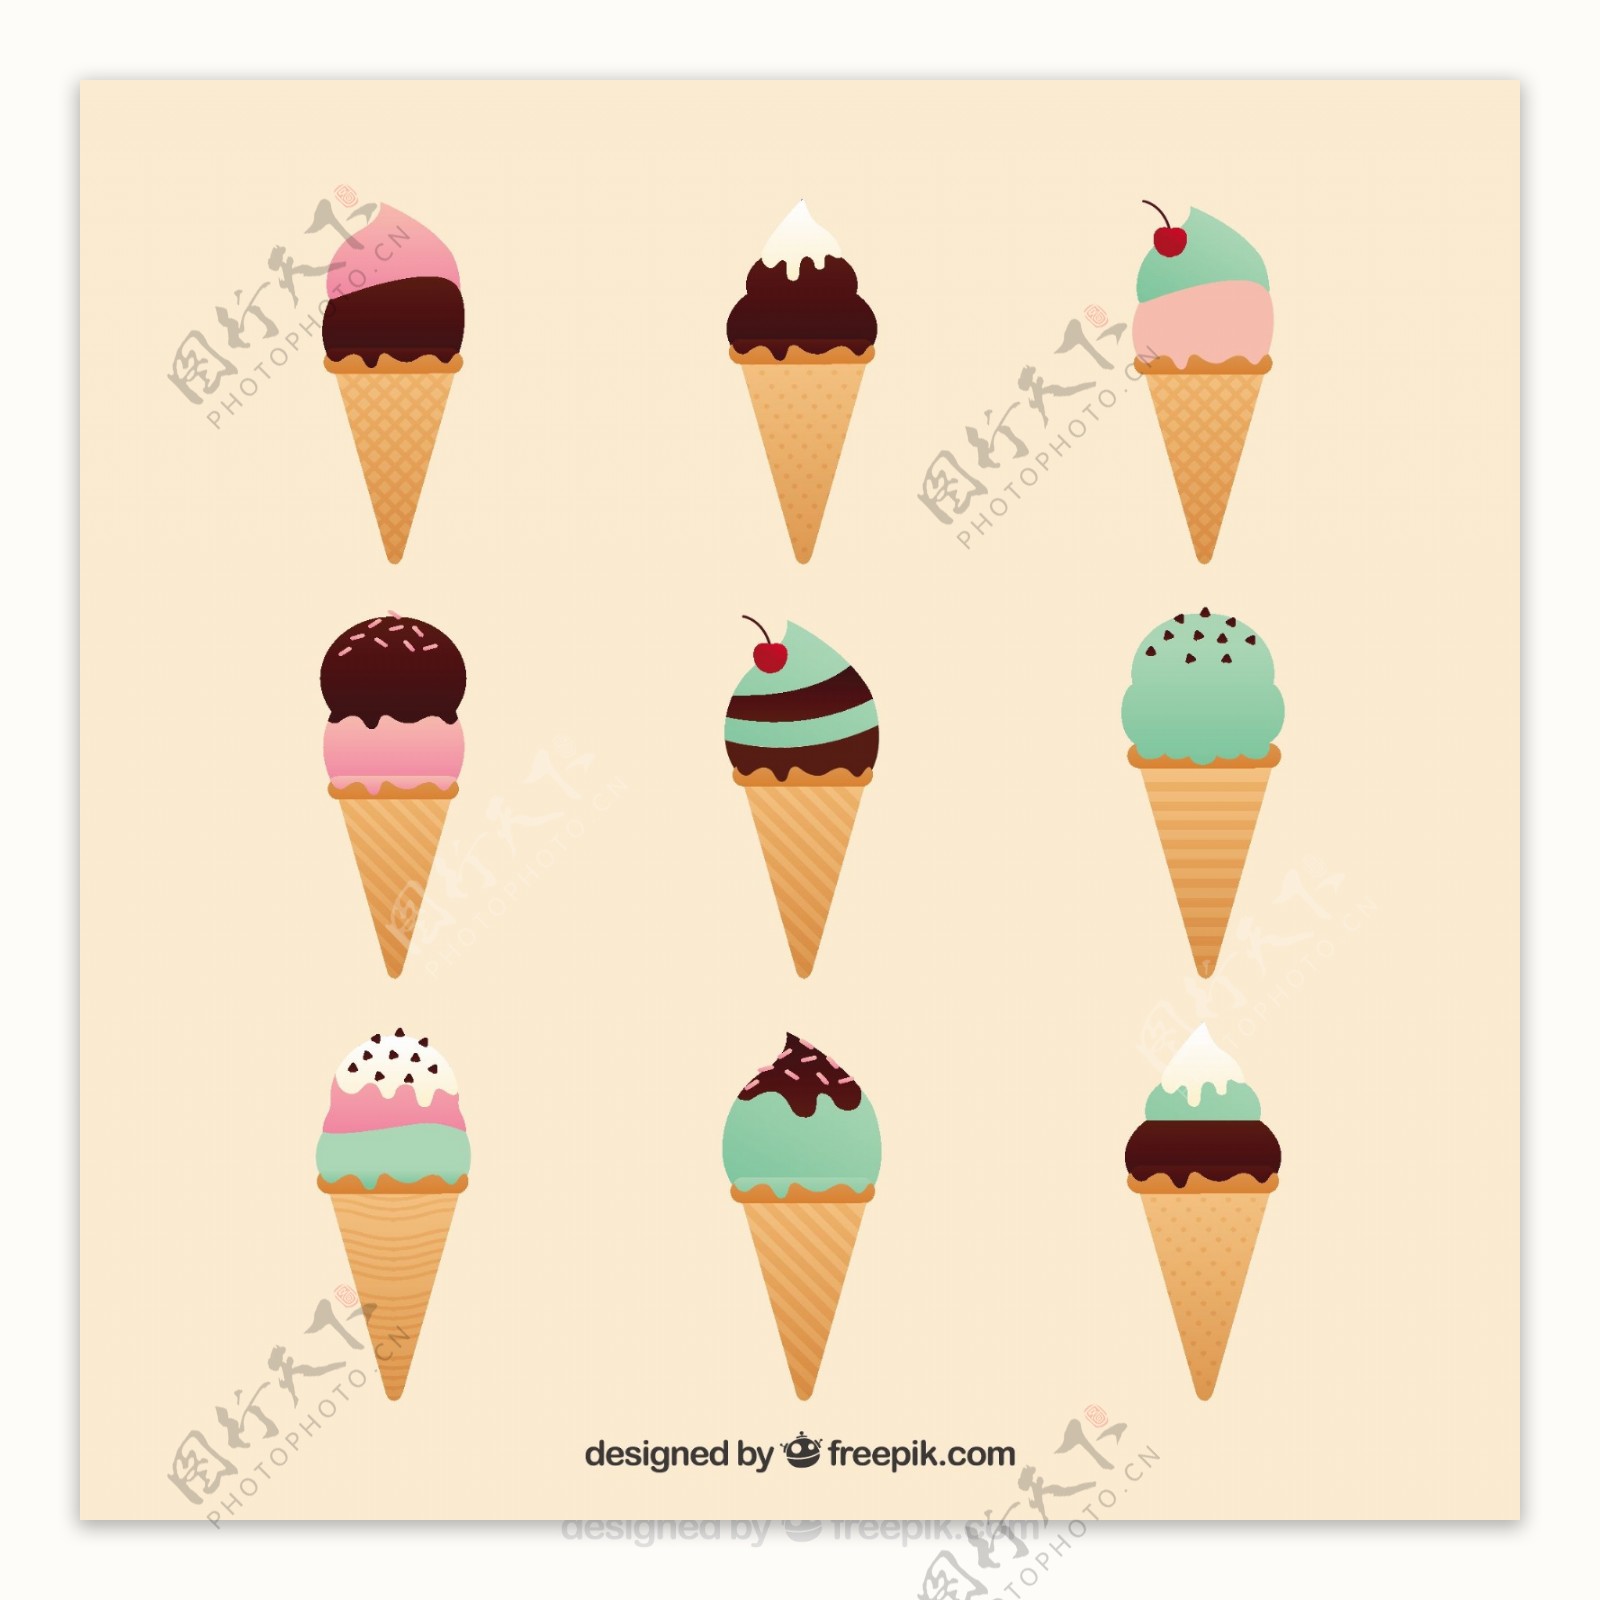 手绘彩色圆锥形冰淇淋冰激凌图标